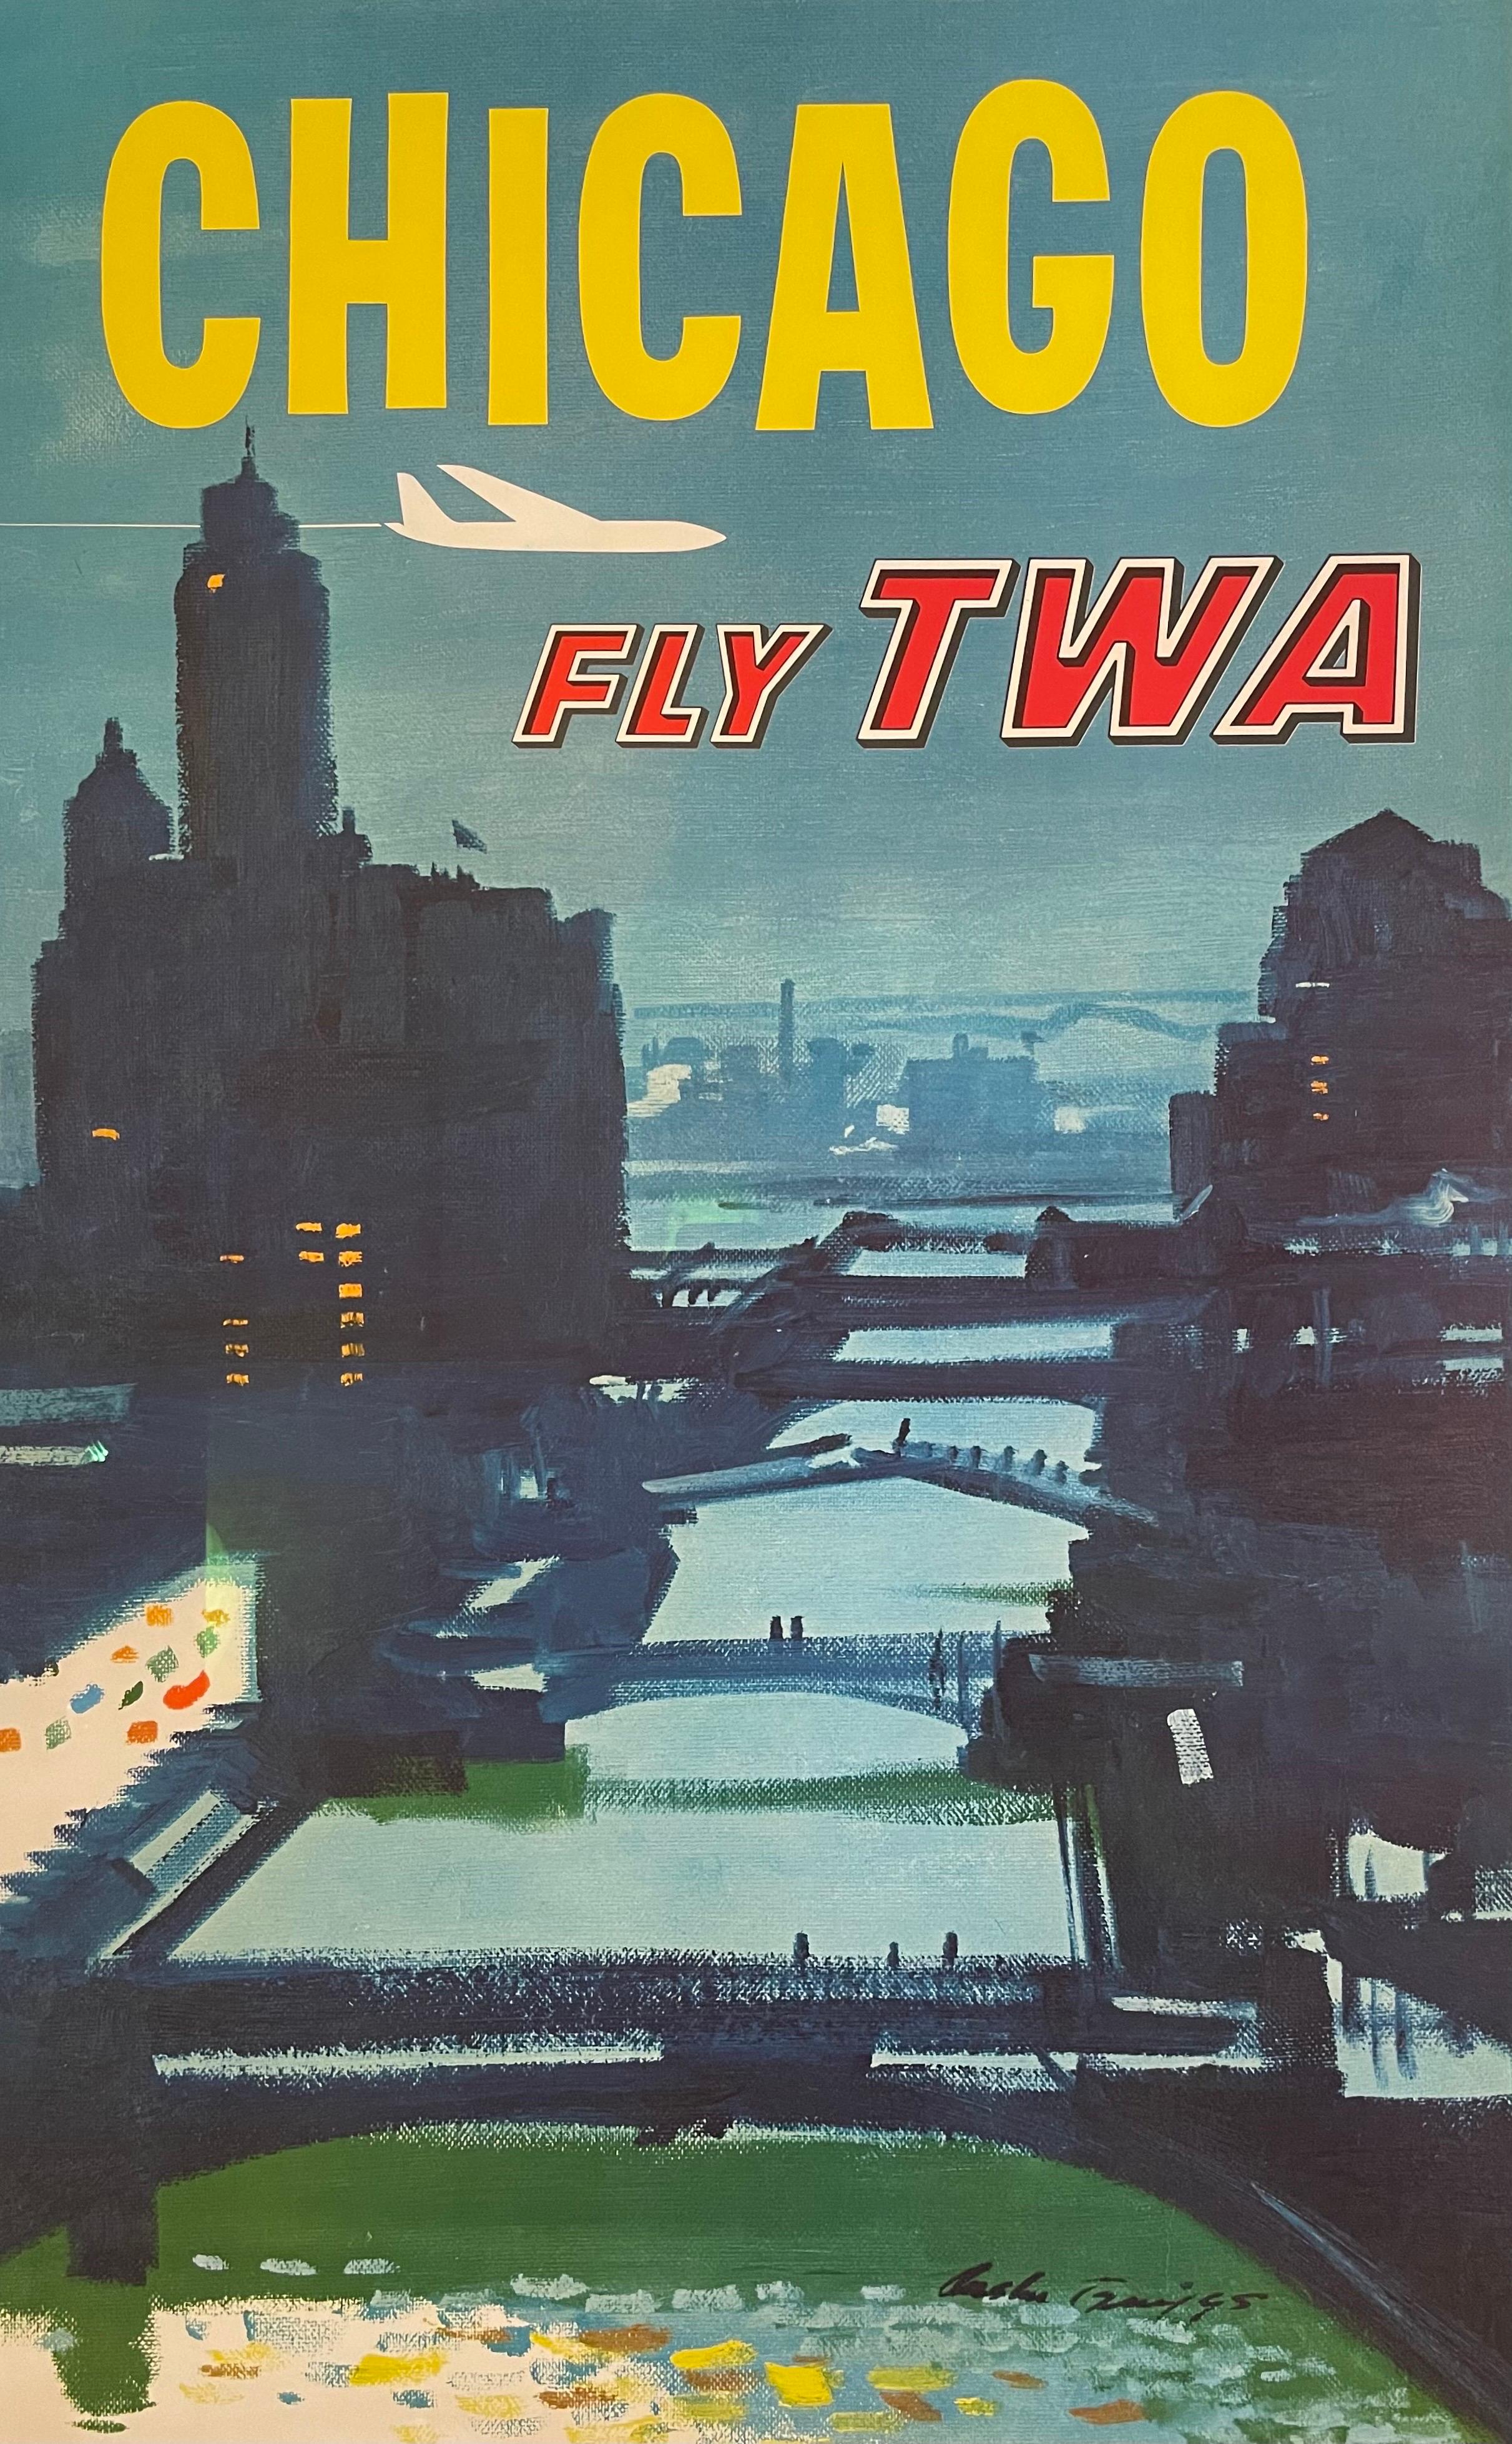 Dieses Reiseplakat für Trans World Airlines aus den 1960er Jahren wurde frisch gerahmt und hat eine königliche Behandlung erhalten. Mit Leinen hinterlegtes Museumsglas und ein scharfer schwarzer Aluminiumrahmen. Ein Werk des amerikanischen Künstlers